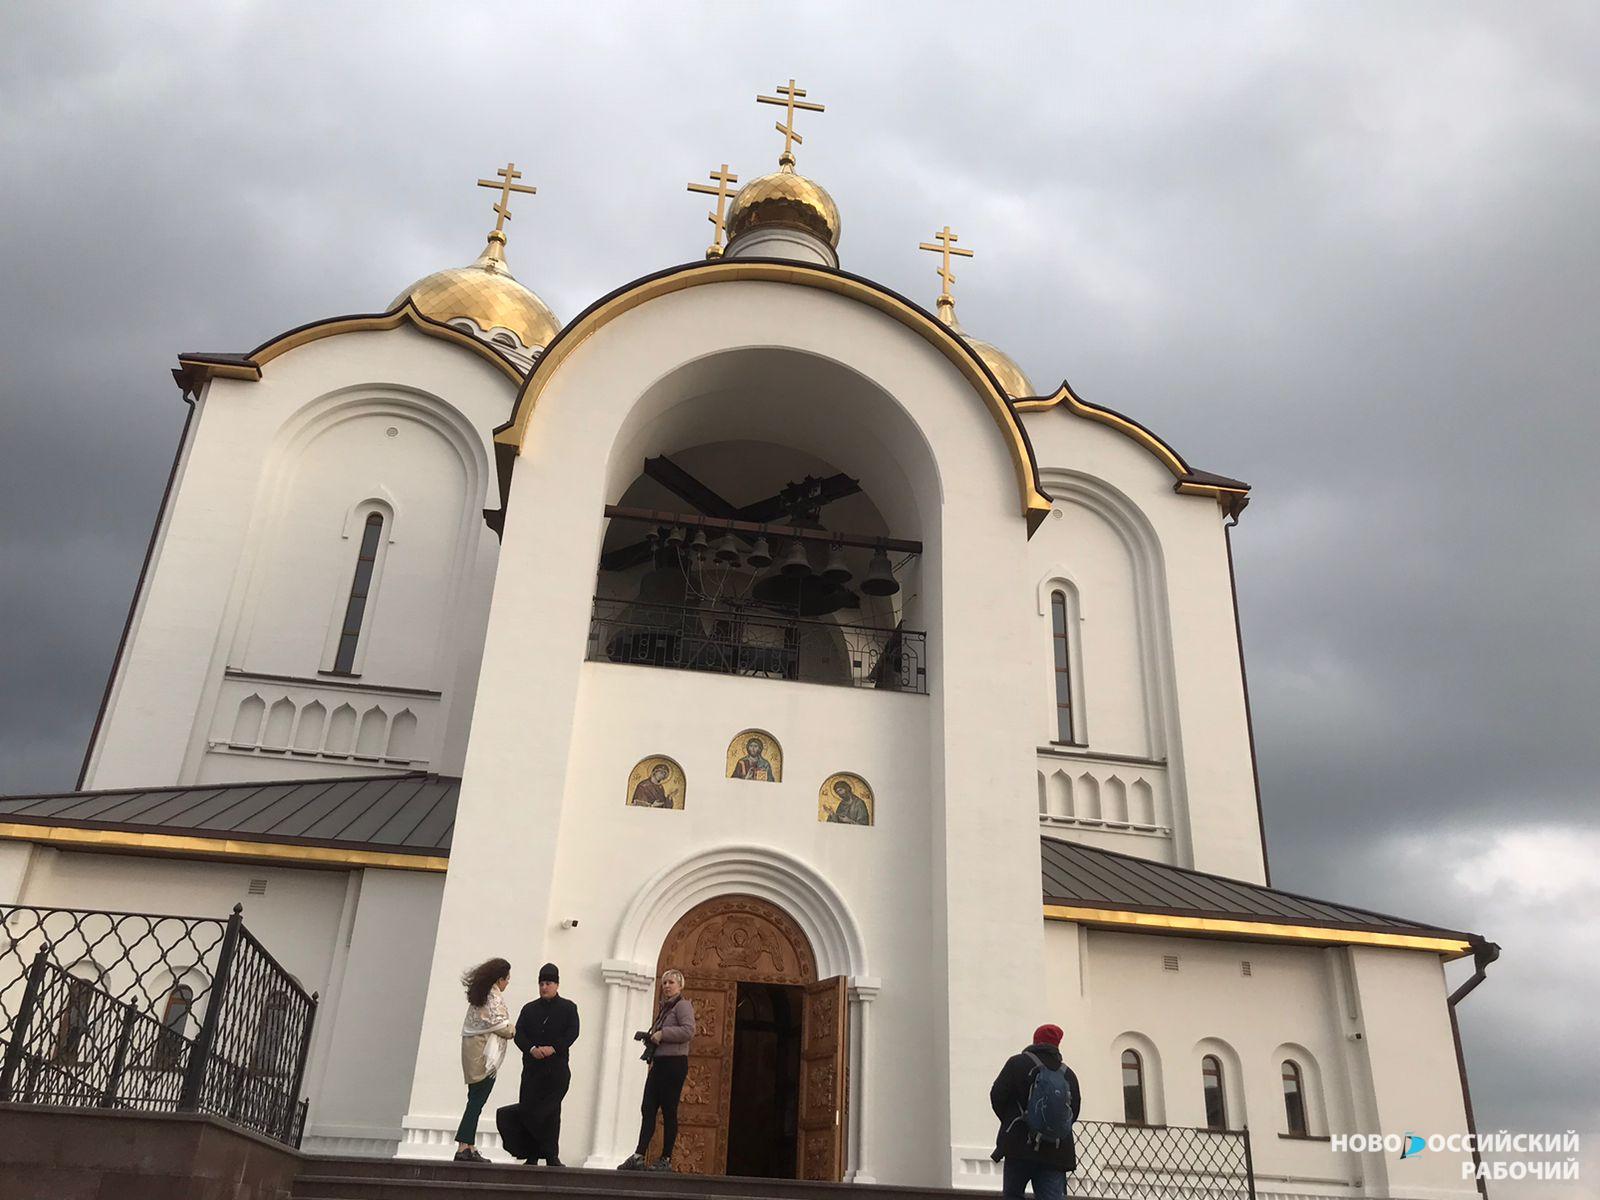 Новороссийцы в выходные дни могут прогуляться по набережной соседней Кабардинки, помолиться и посетить загадочный парк